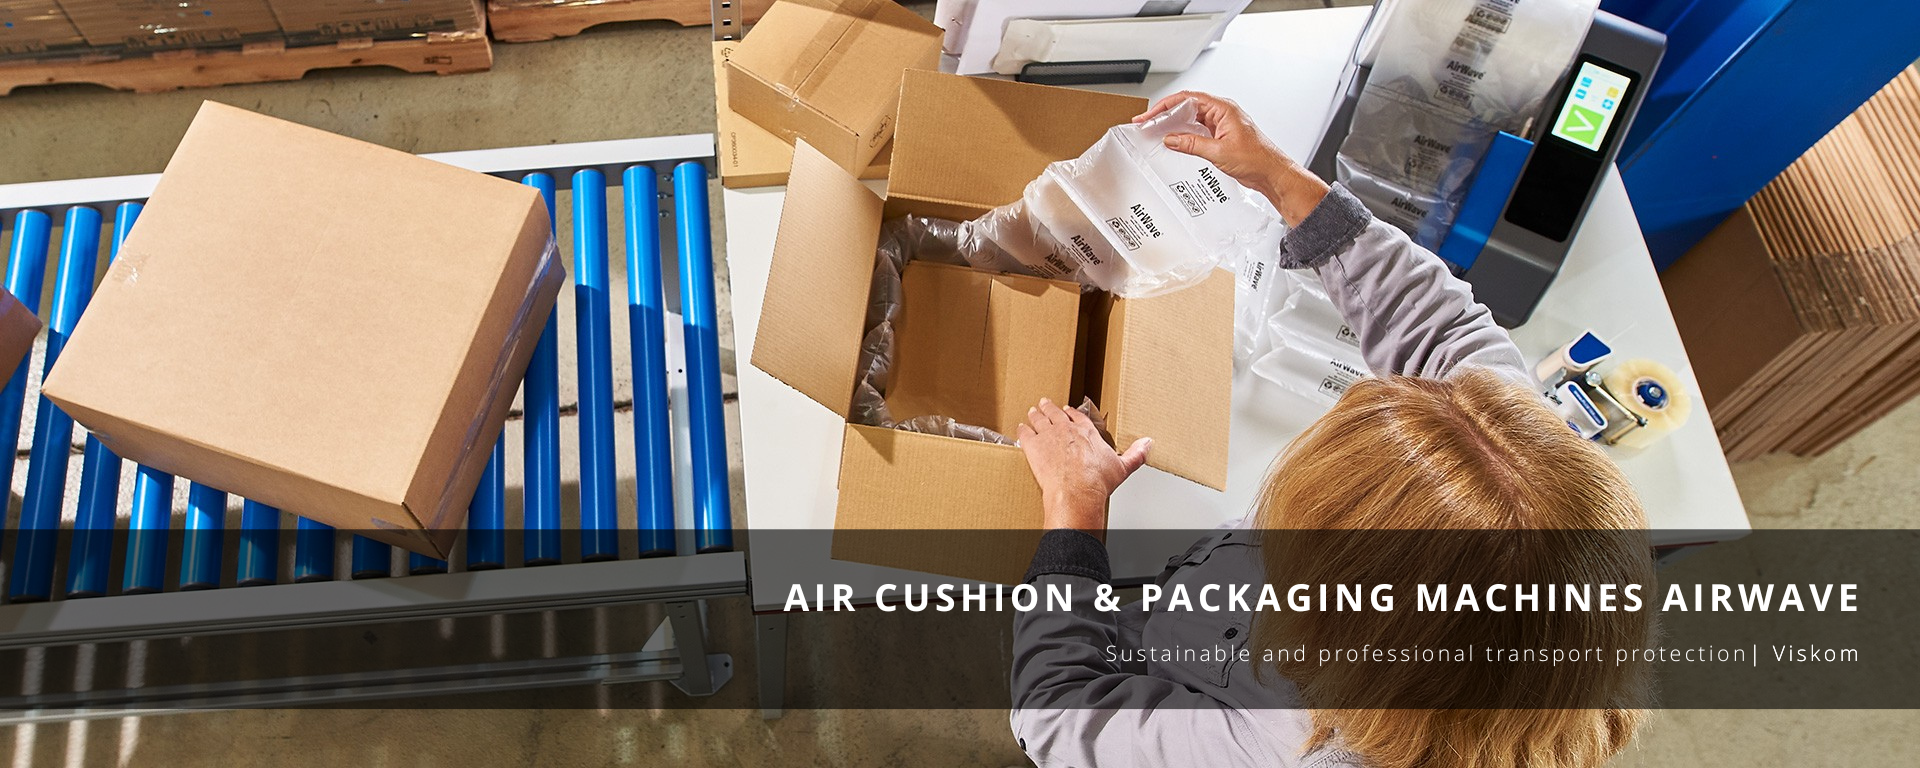 Air cushion & packaging machines AirWave